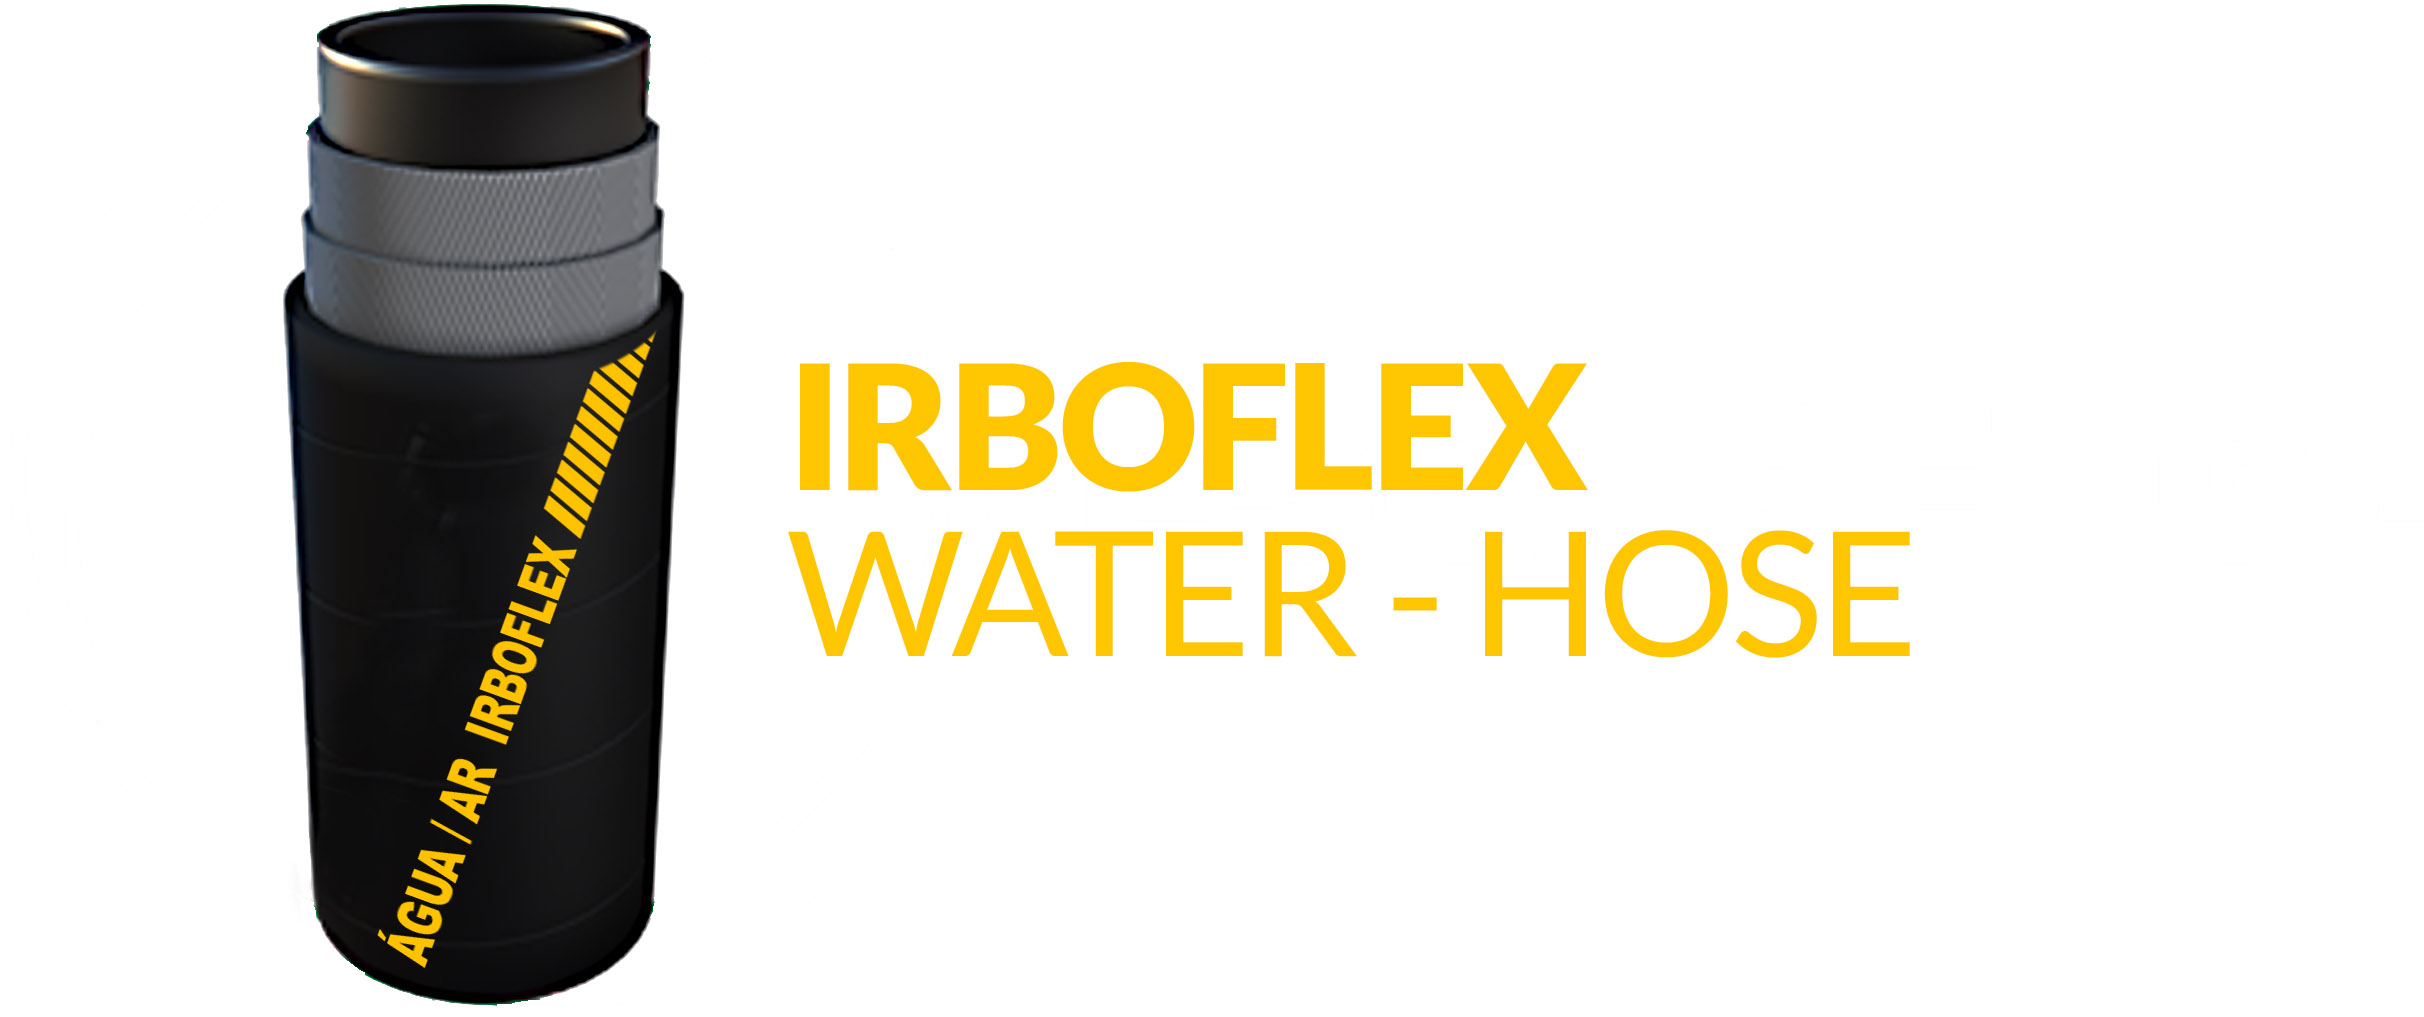 agua-ar___-_irboflex-water-hose-copia